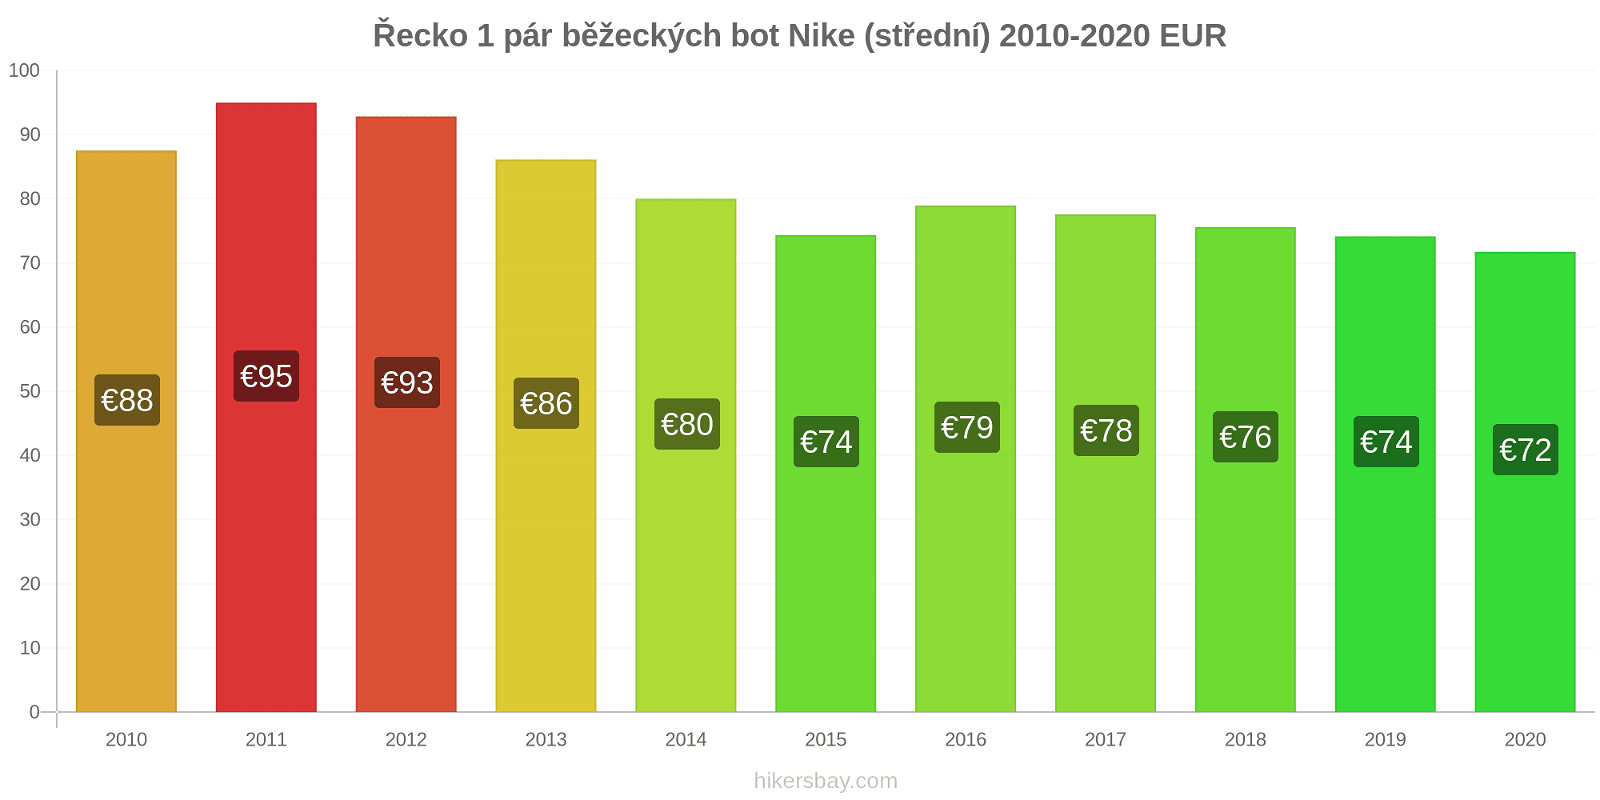 Řecko změny cen 1 pár běžeckých bot Nike (střední) hikersbay.com